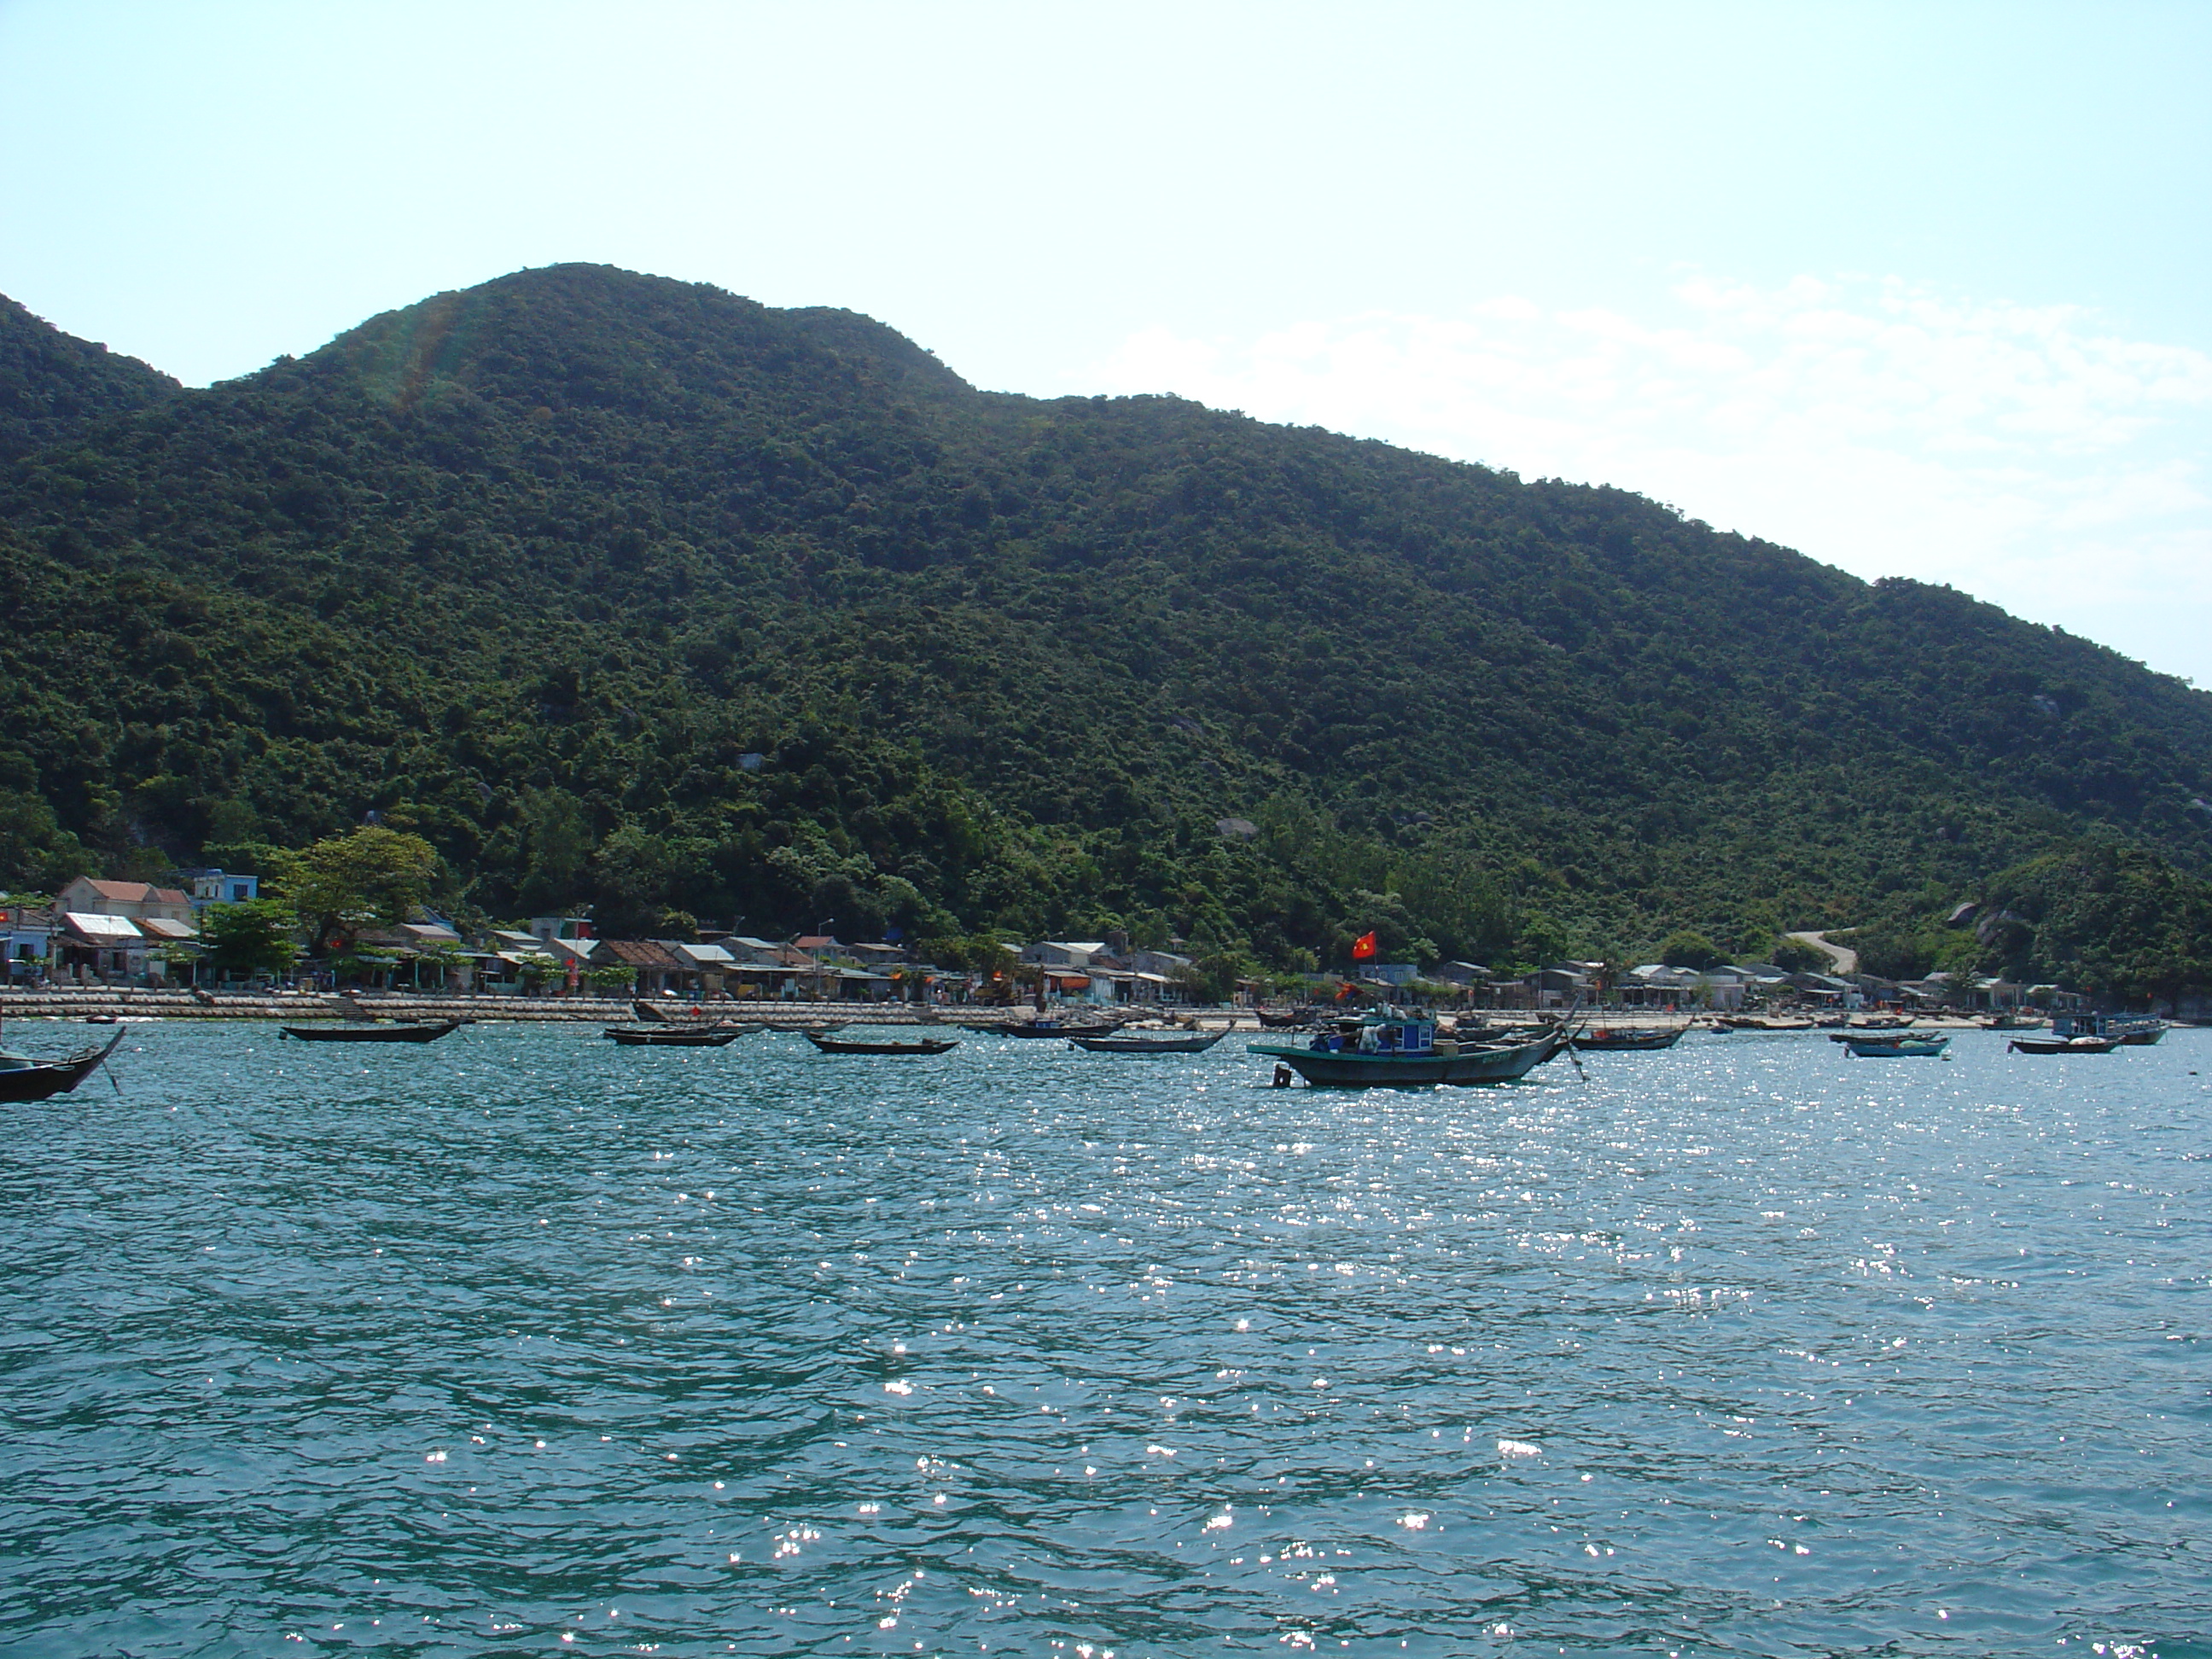 The port of bến tàu Cù Lao Chàm.